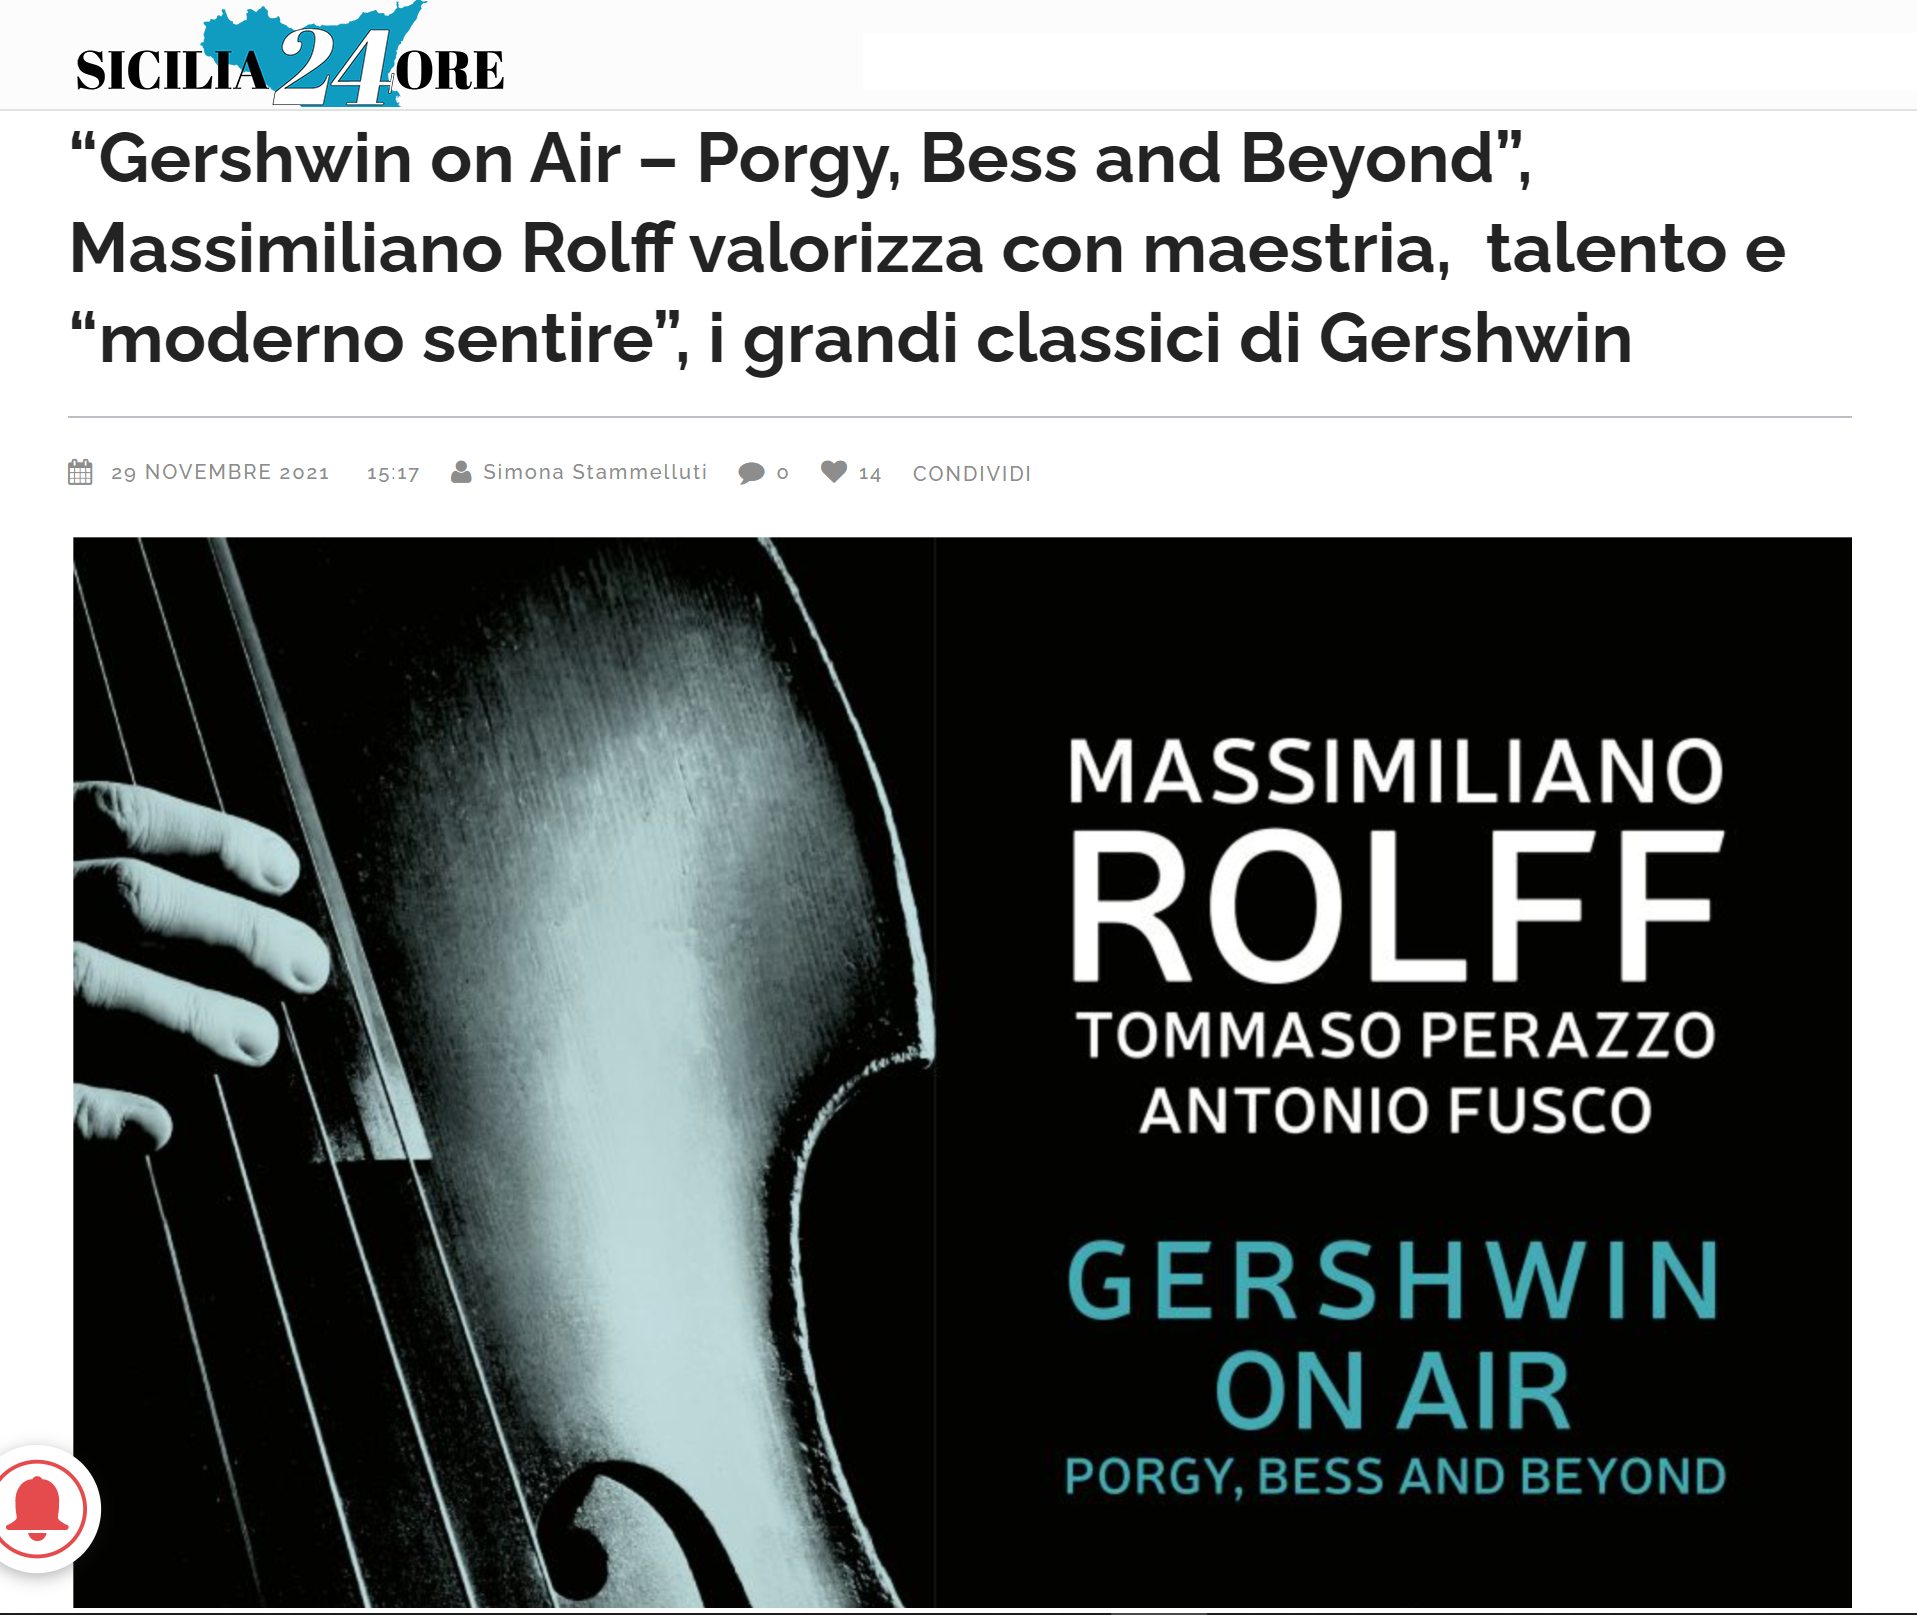 Recensione dell'album Gershwin on Air di Massimiliano Rolff su Sicilia 24 ore